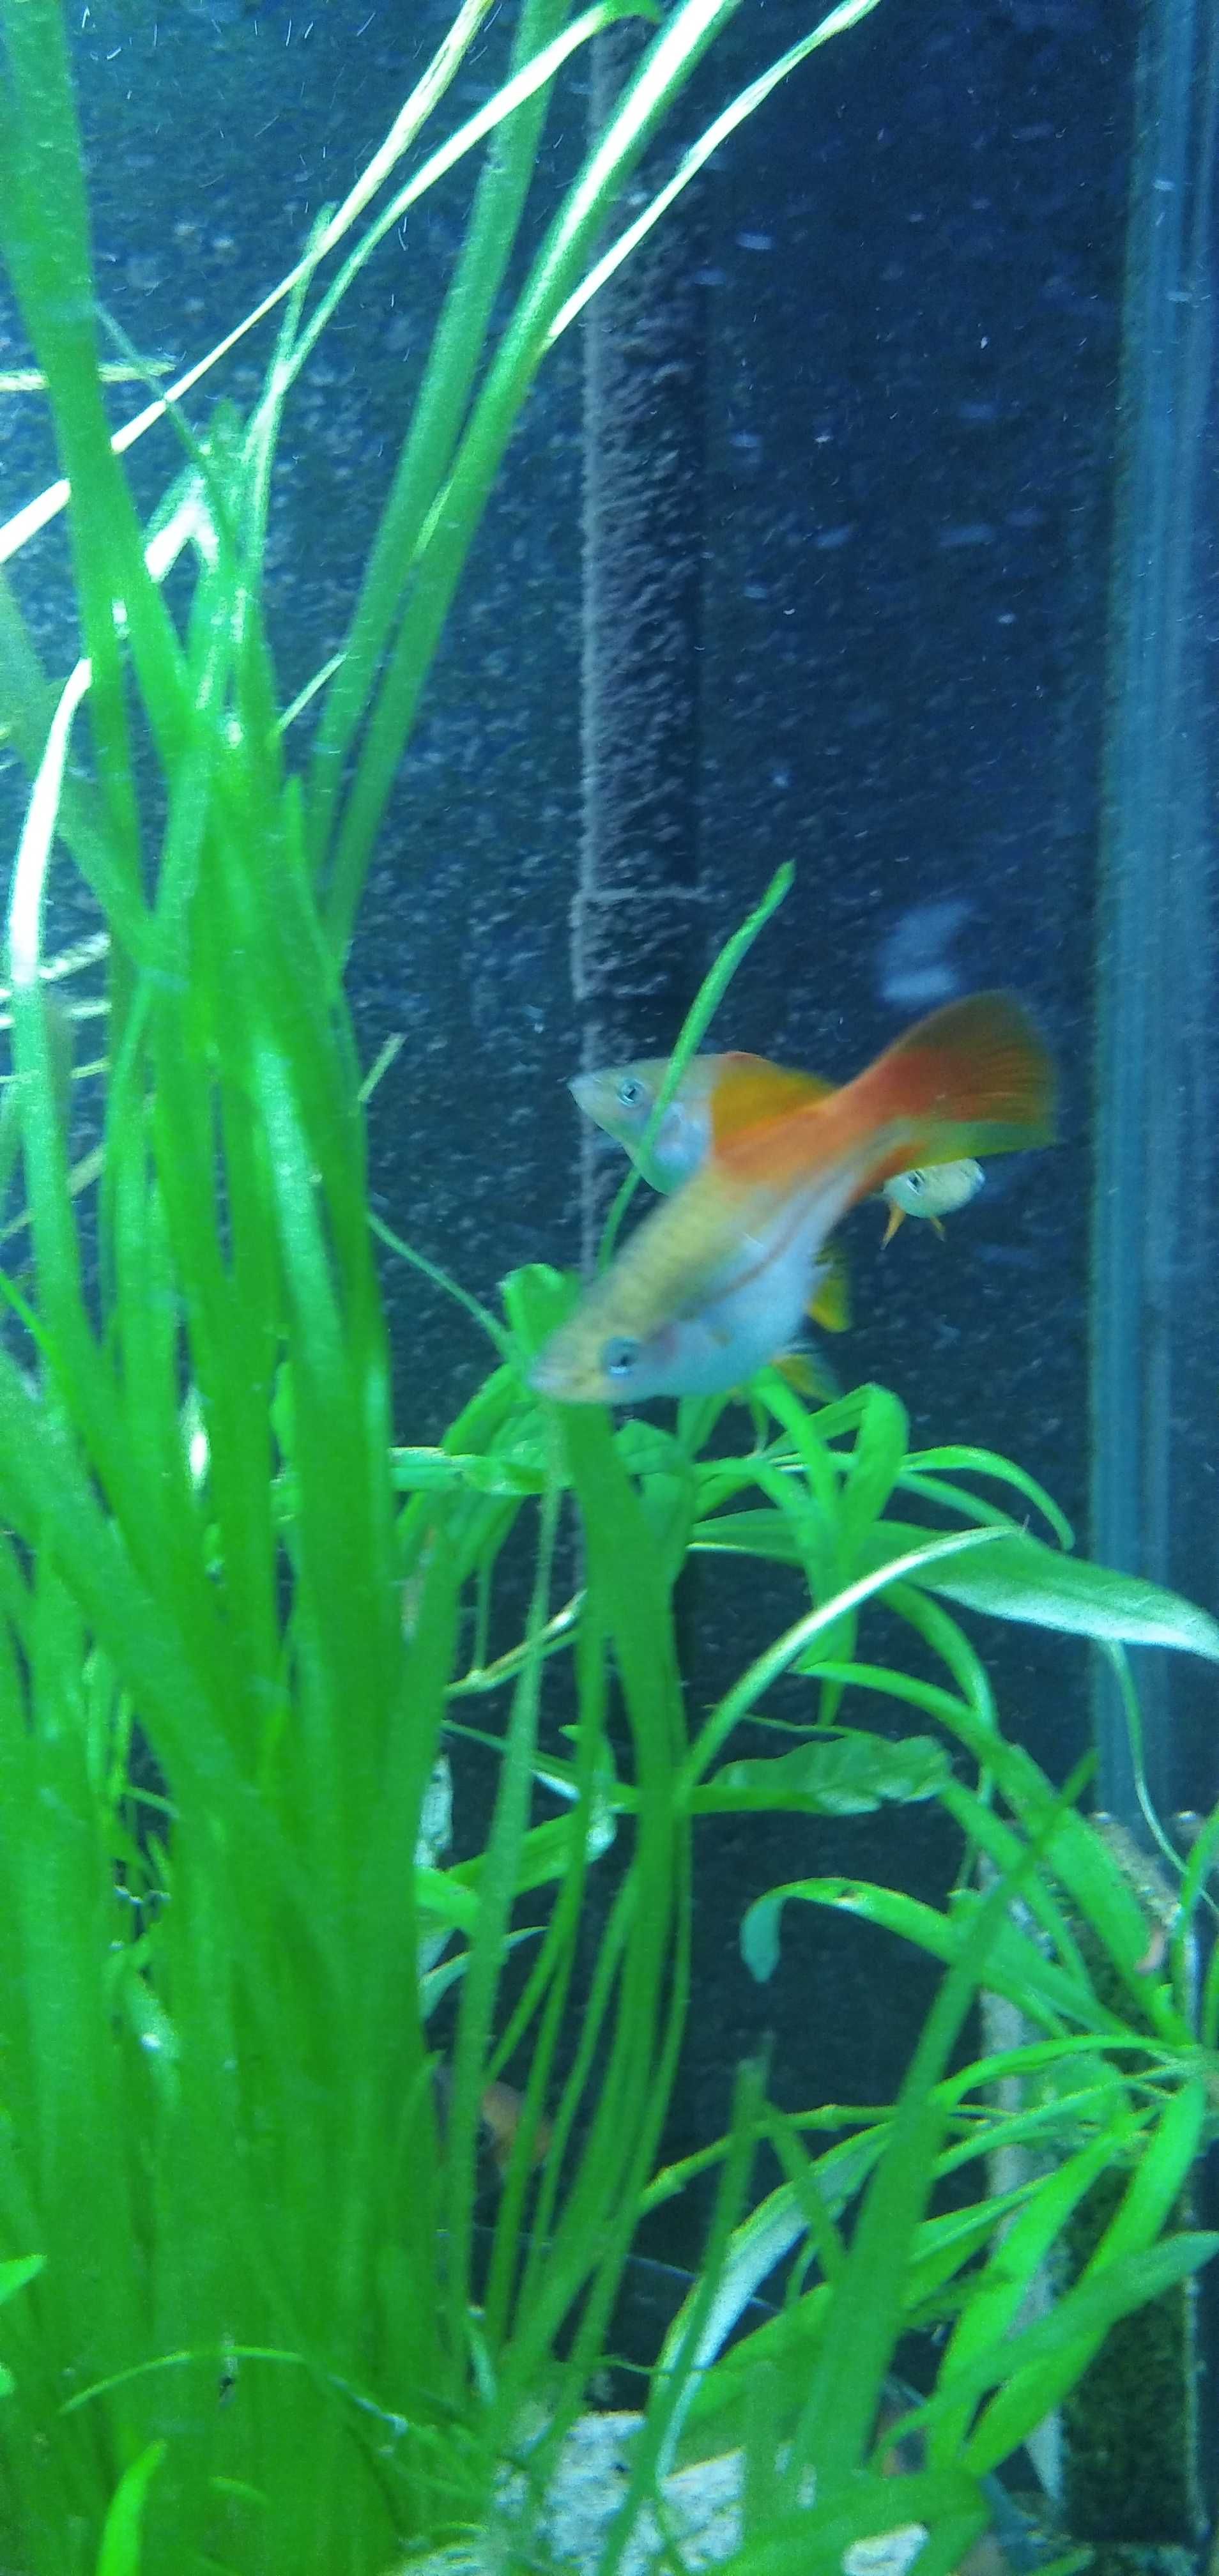 Pewne kolorowe rybki do akwarium mieczyki zielone czerwone piękne